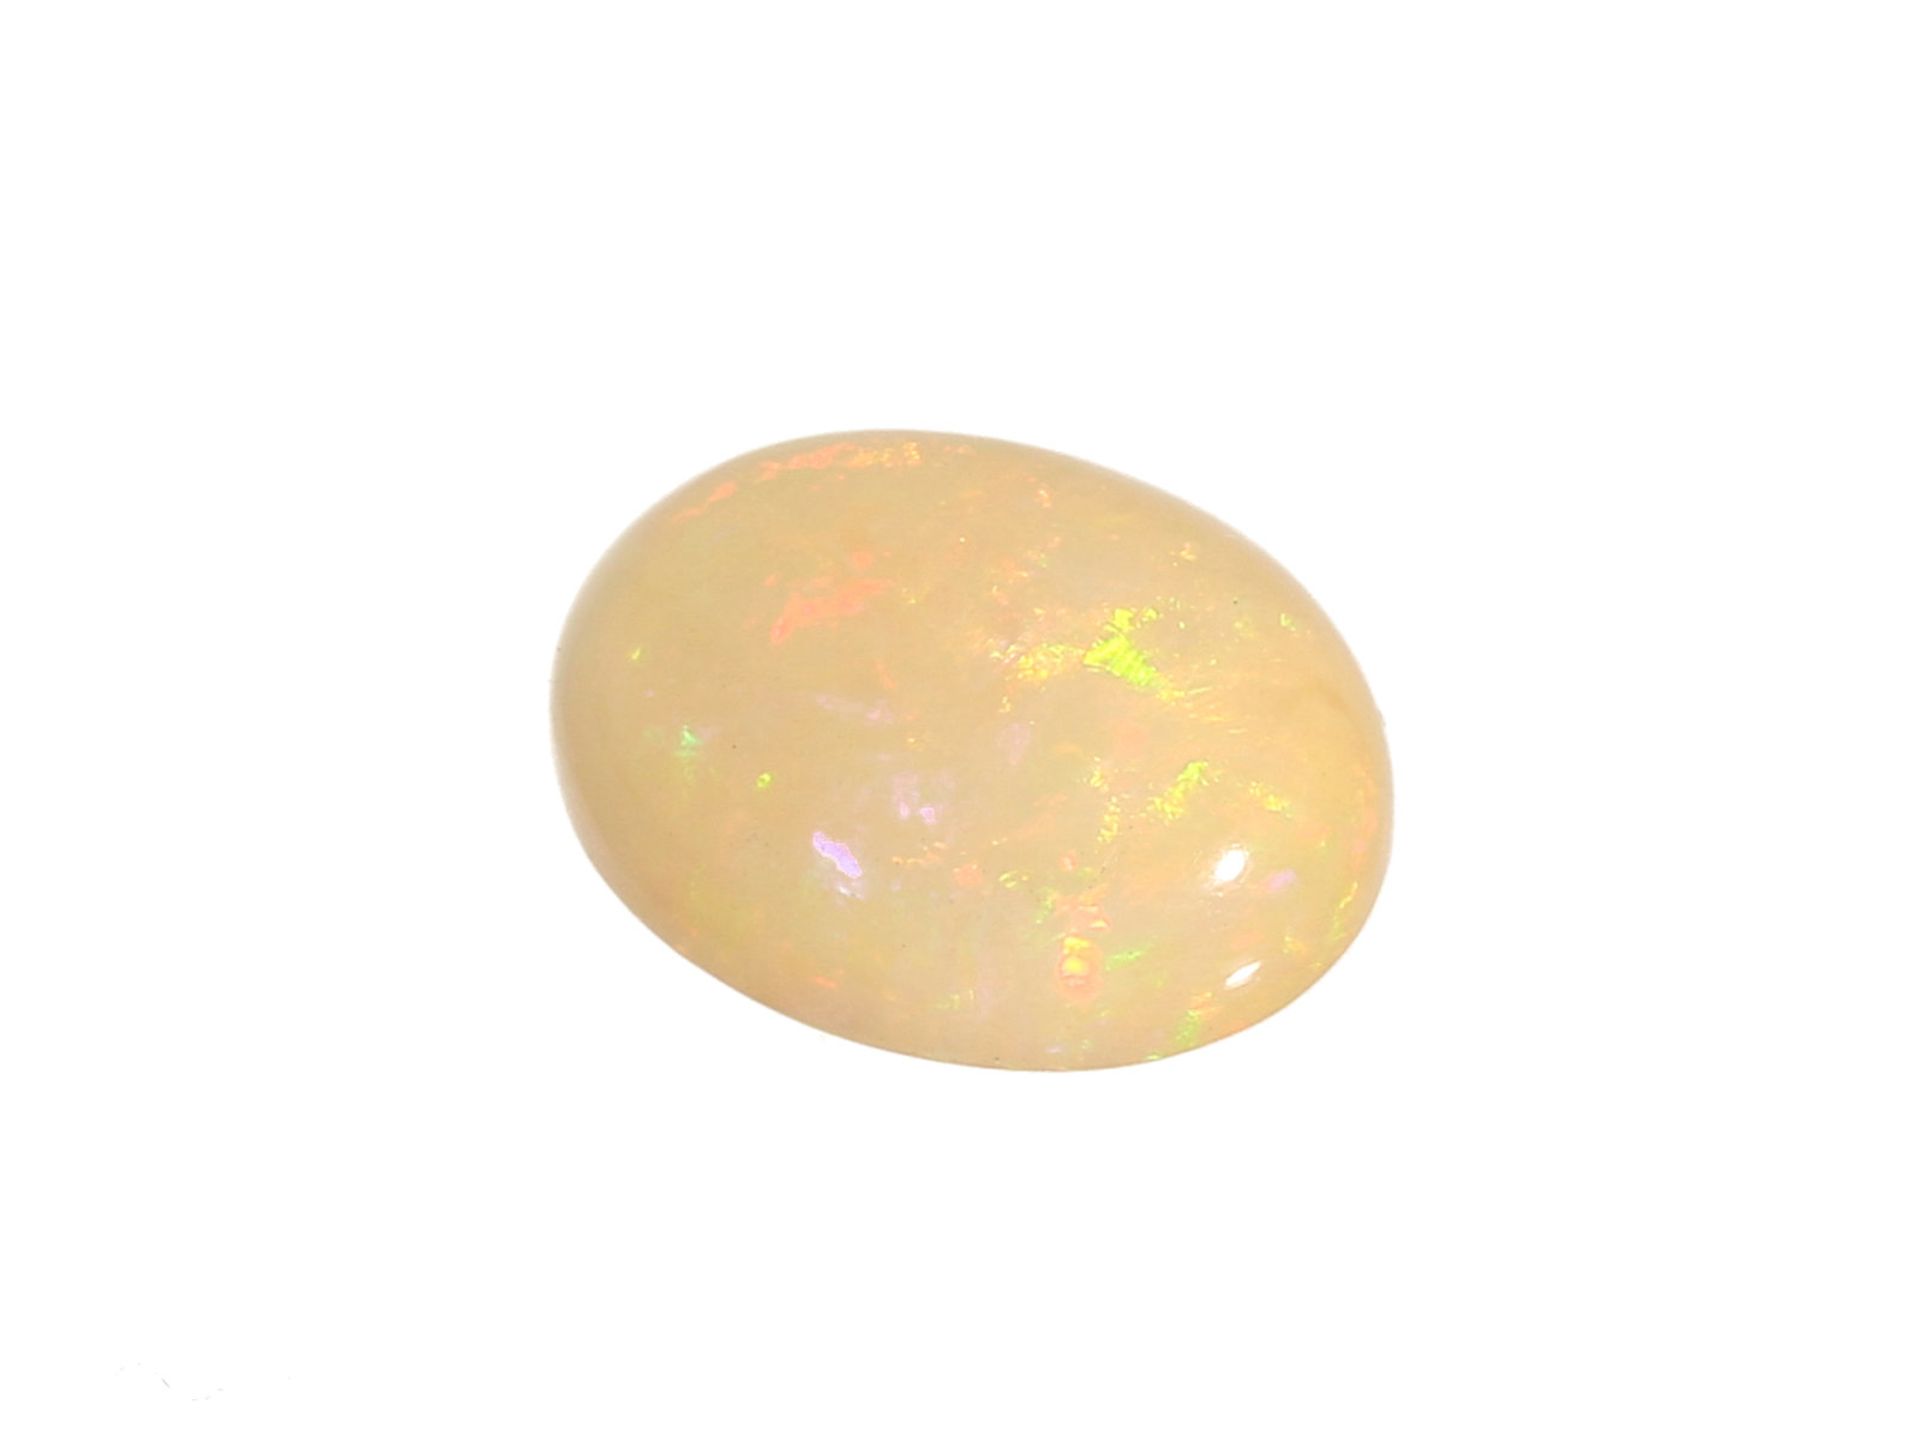 Opal: natürlicher Opal von sehr schöner Qualität, 6,83ct, inklusive GutachtenCa. 16,00 × 12,75 × 6,